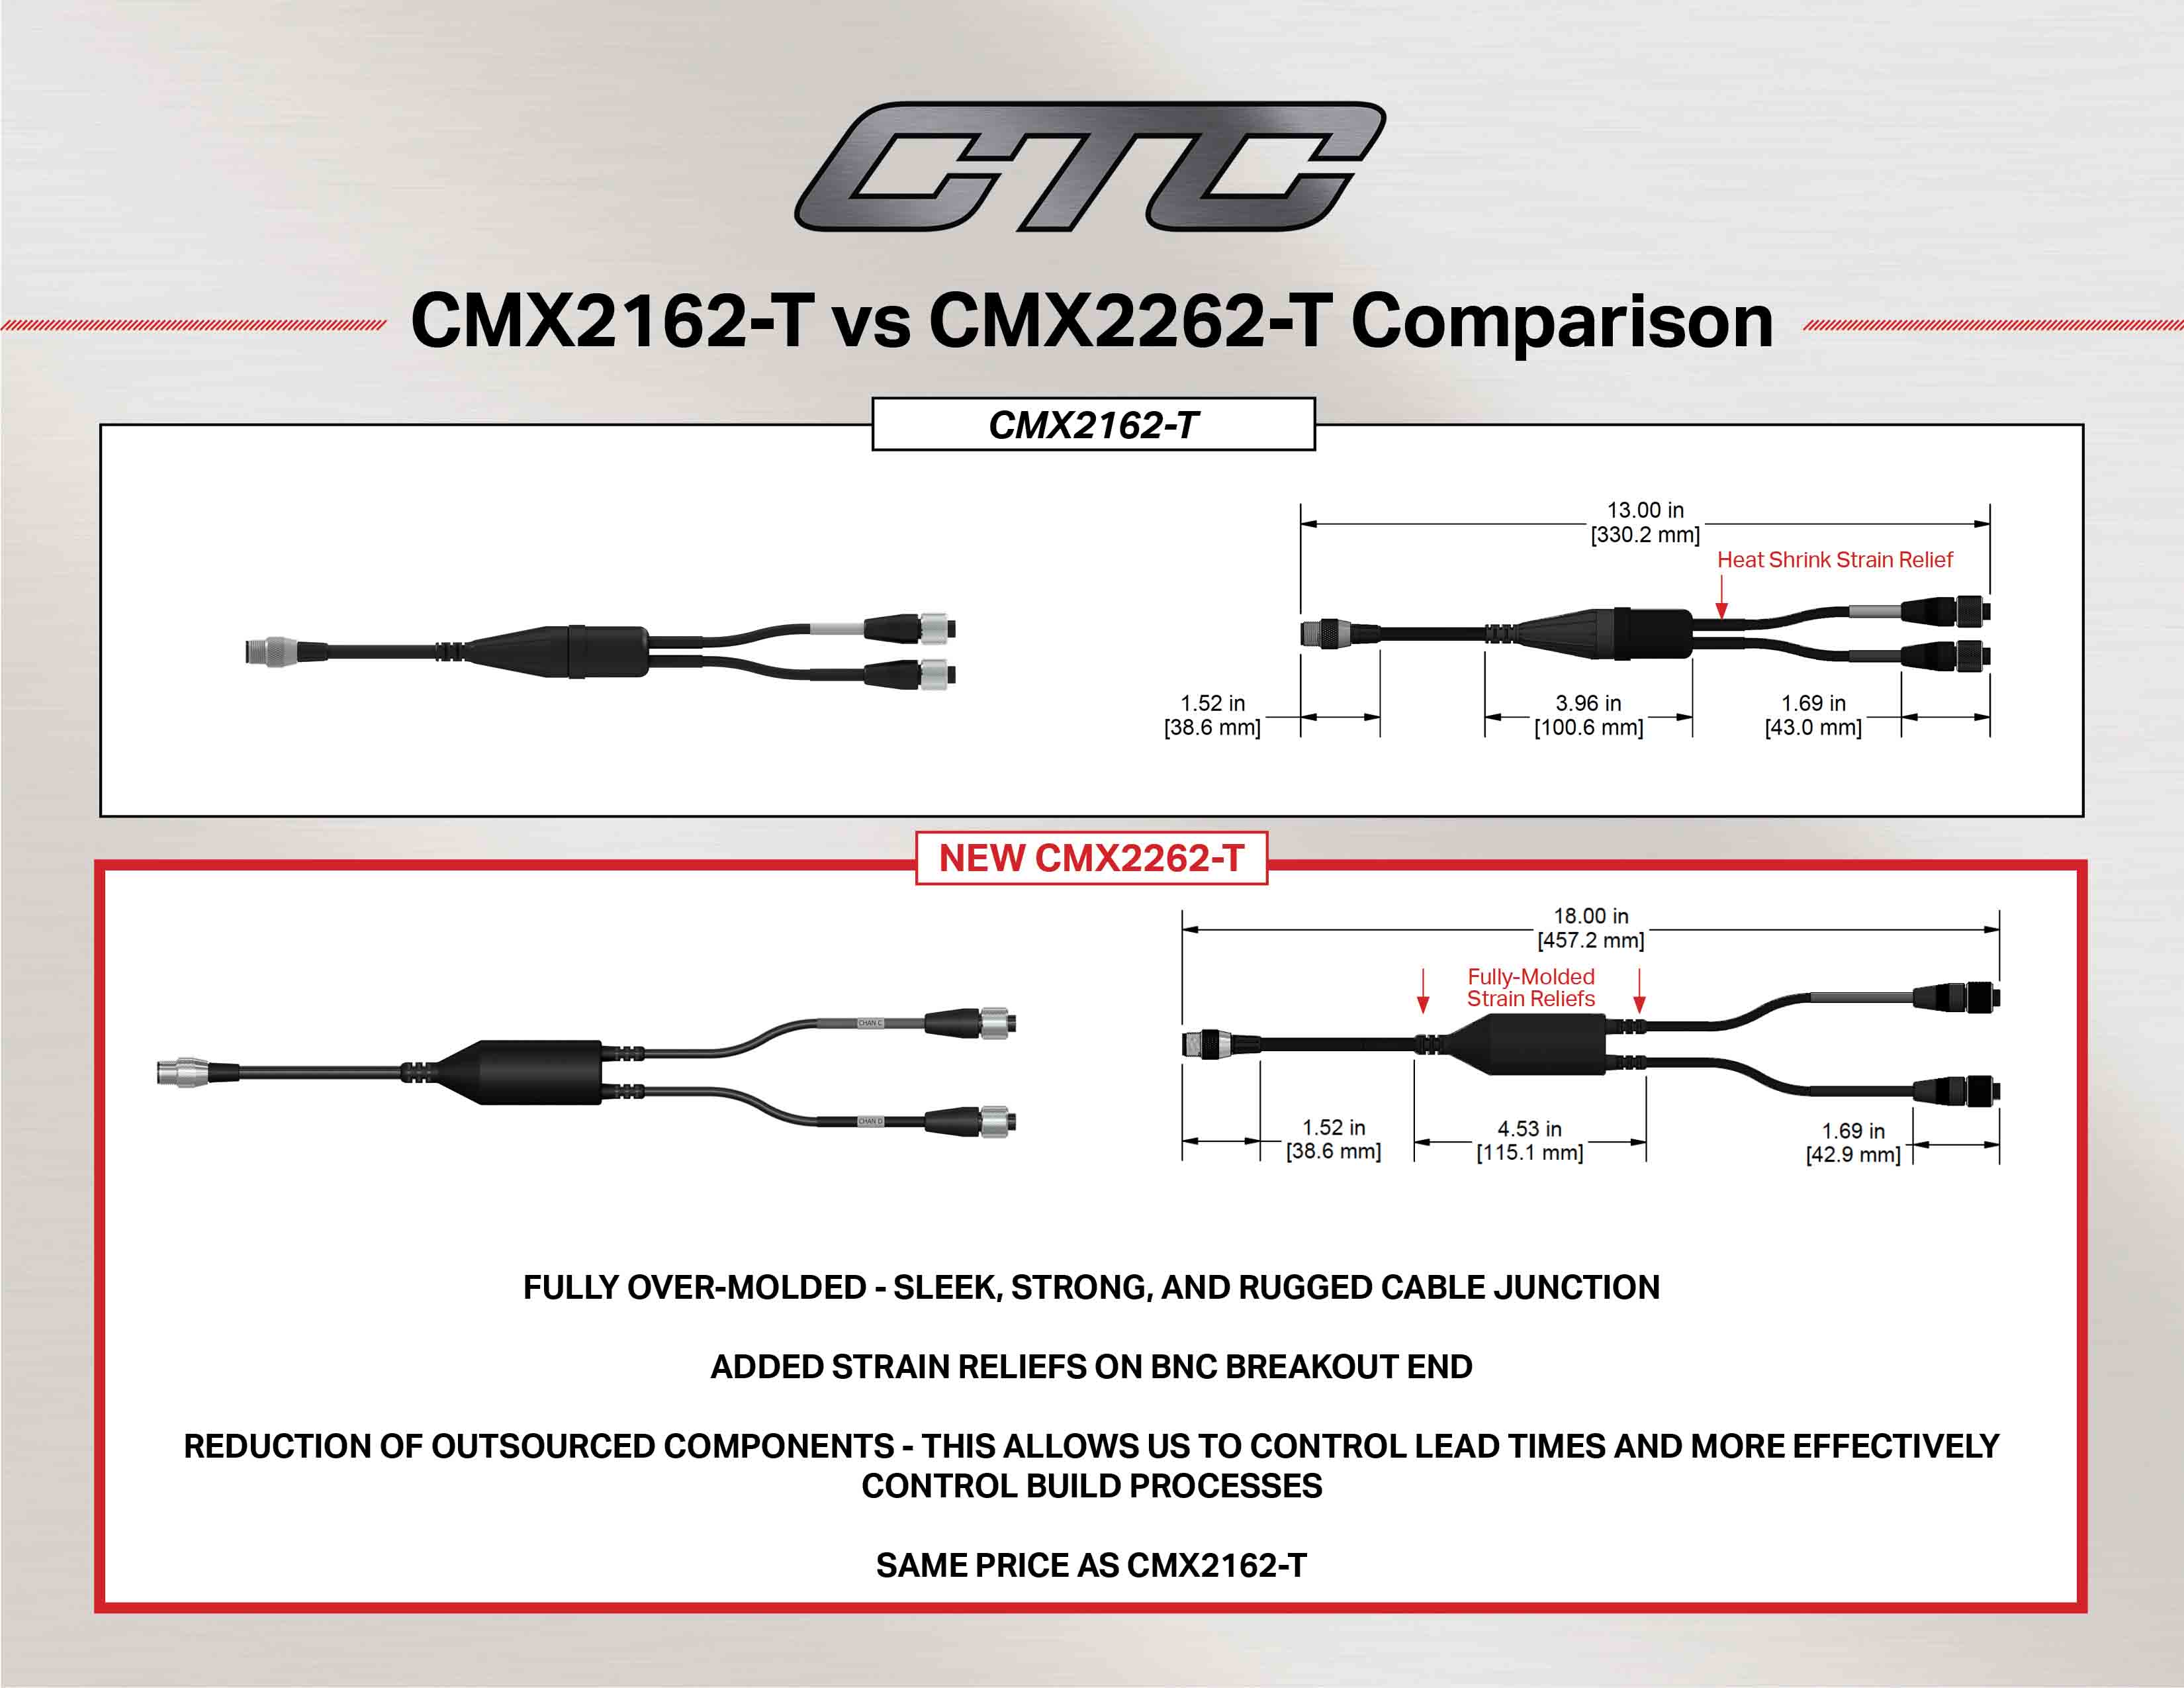 CMX2162-T vs CMX2262-T cable comparison diagram and measurements